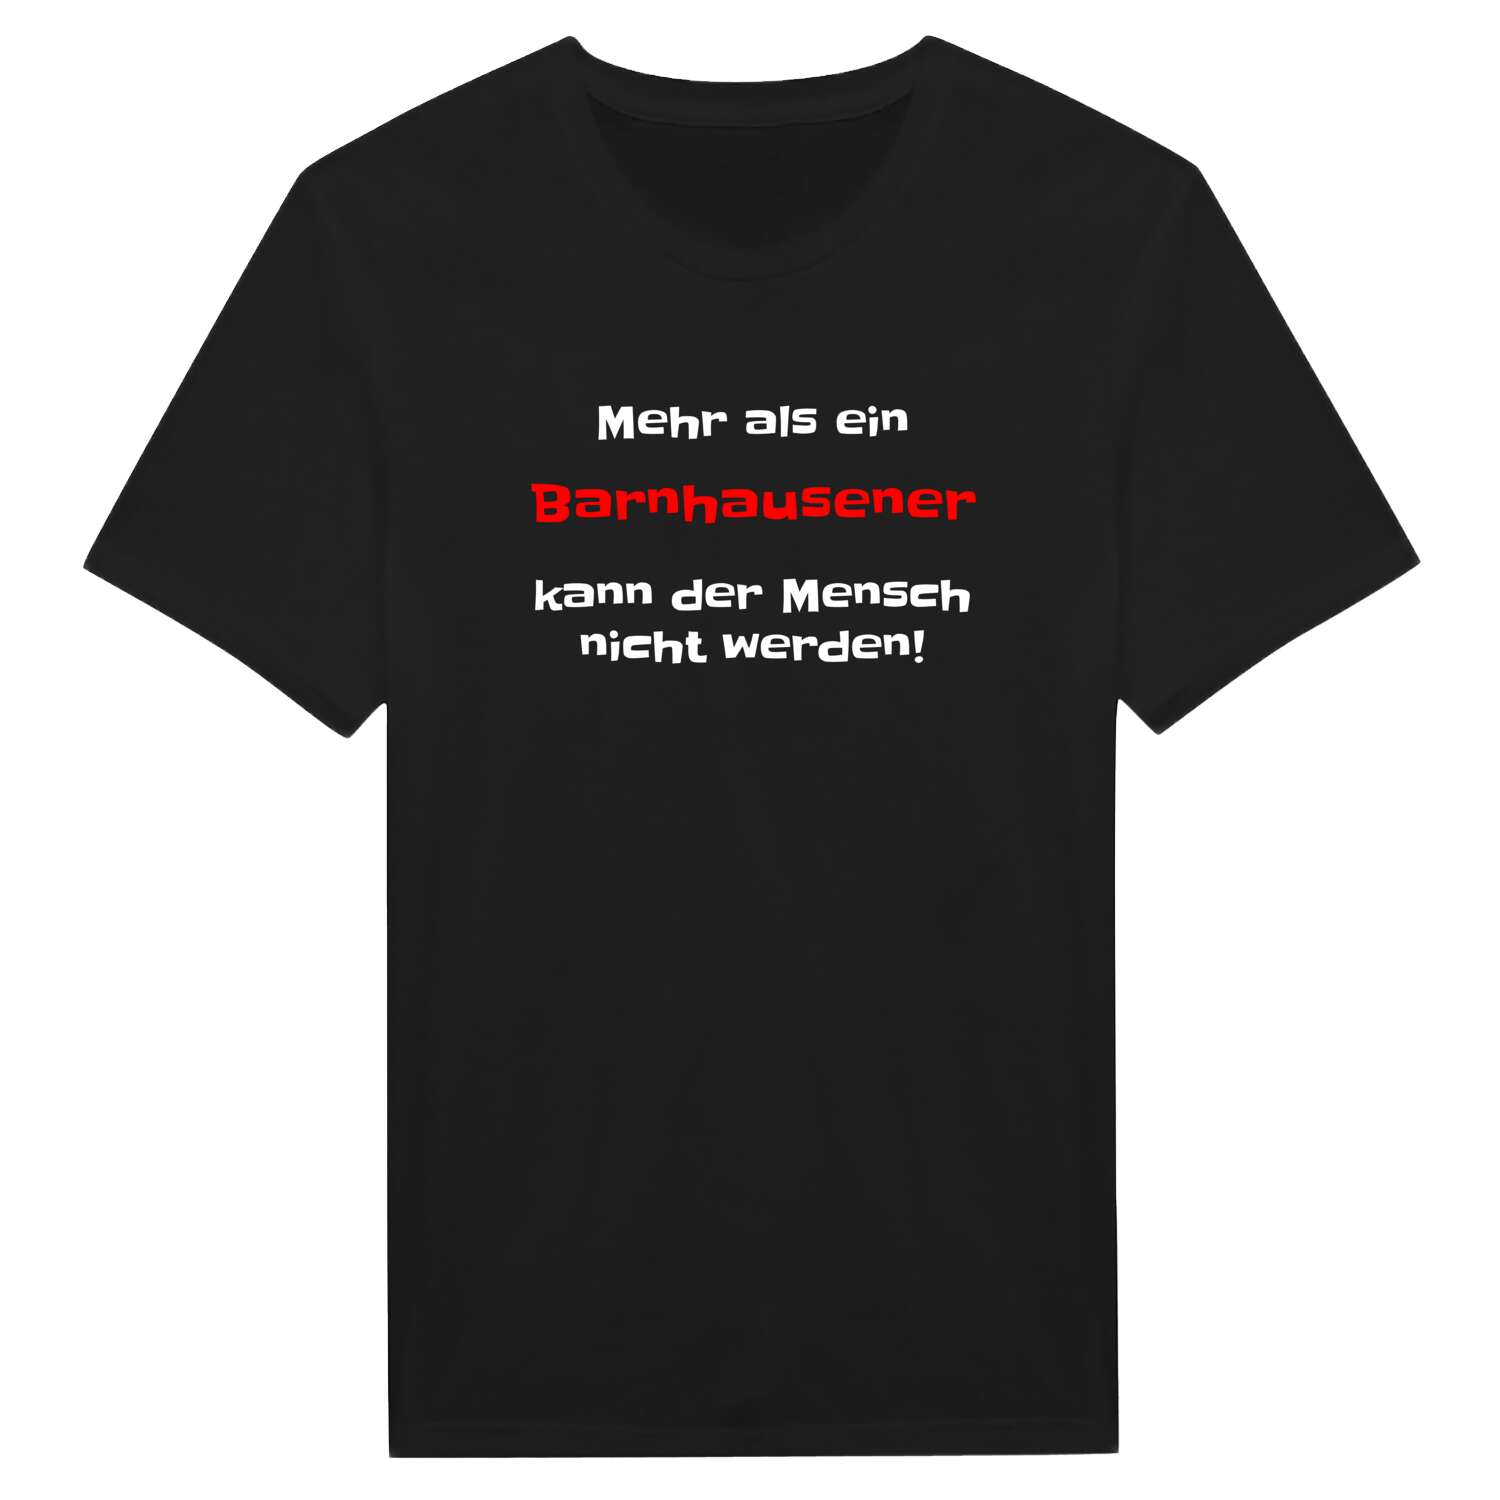 Barnhausen T-Shirt »Mehr als ein«